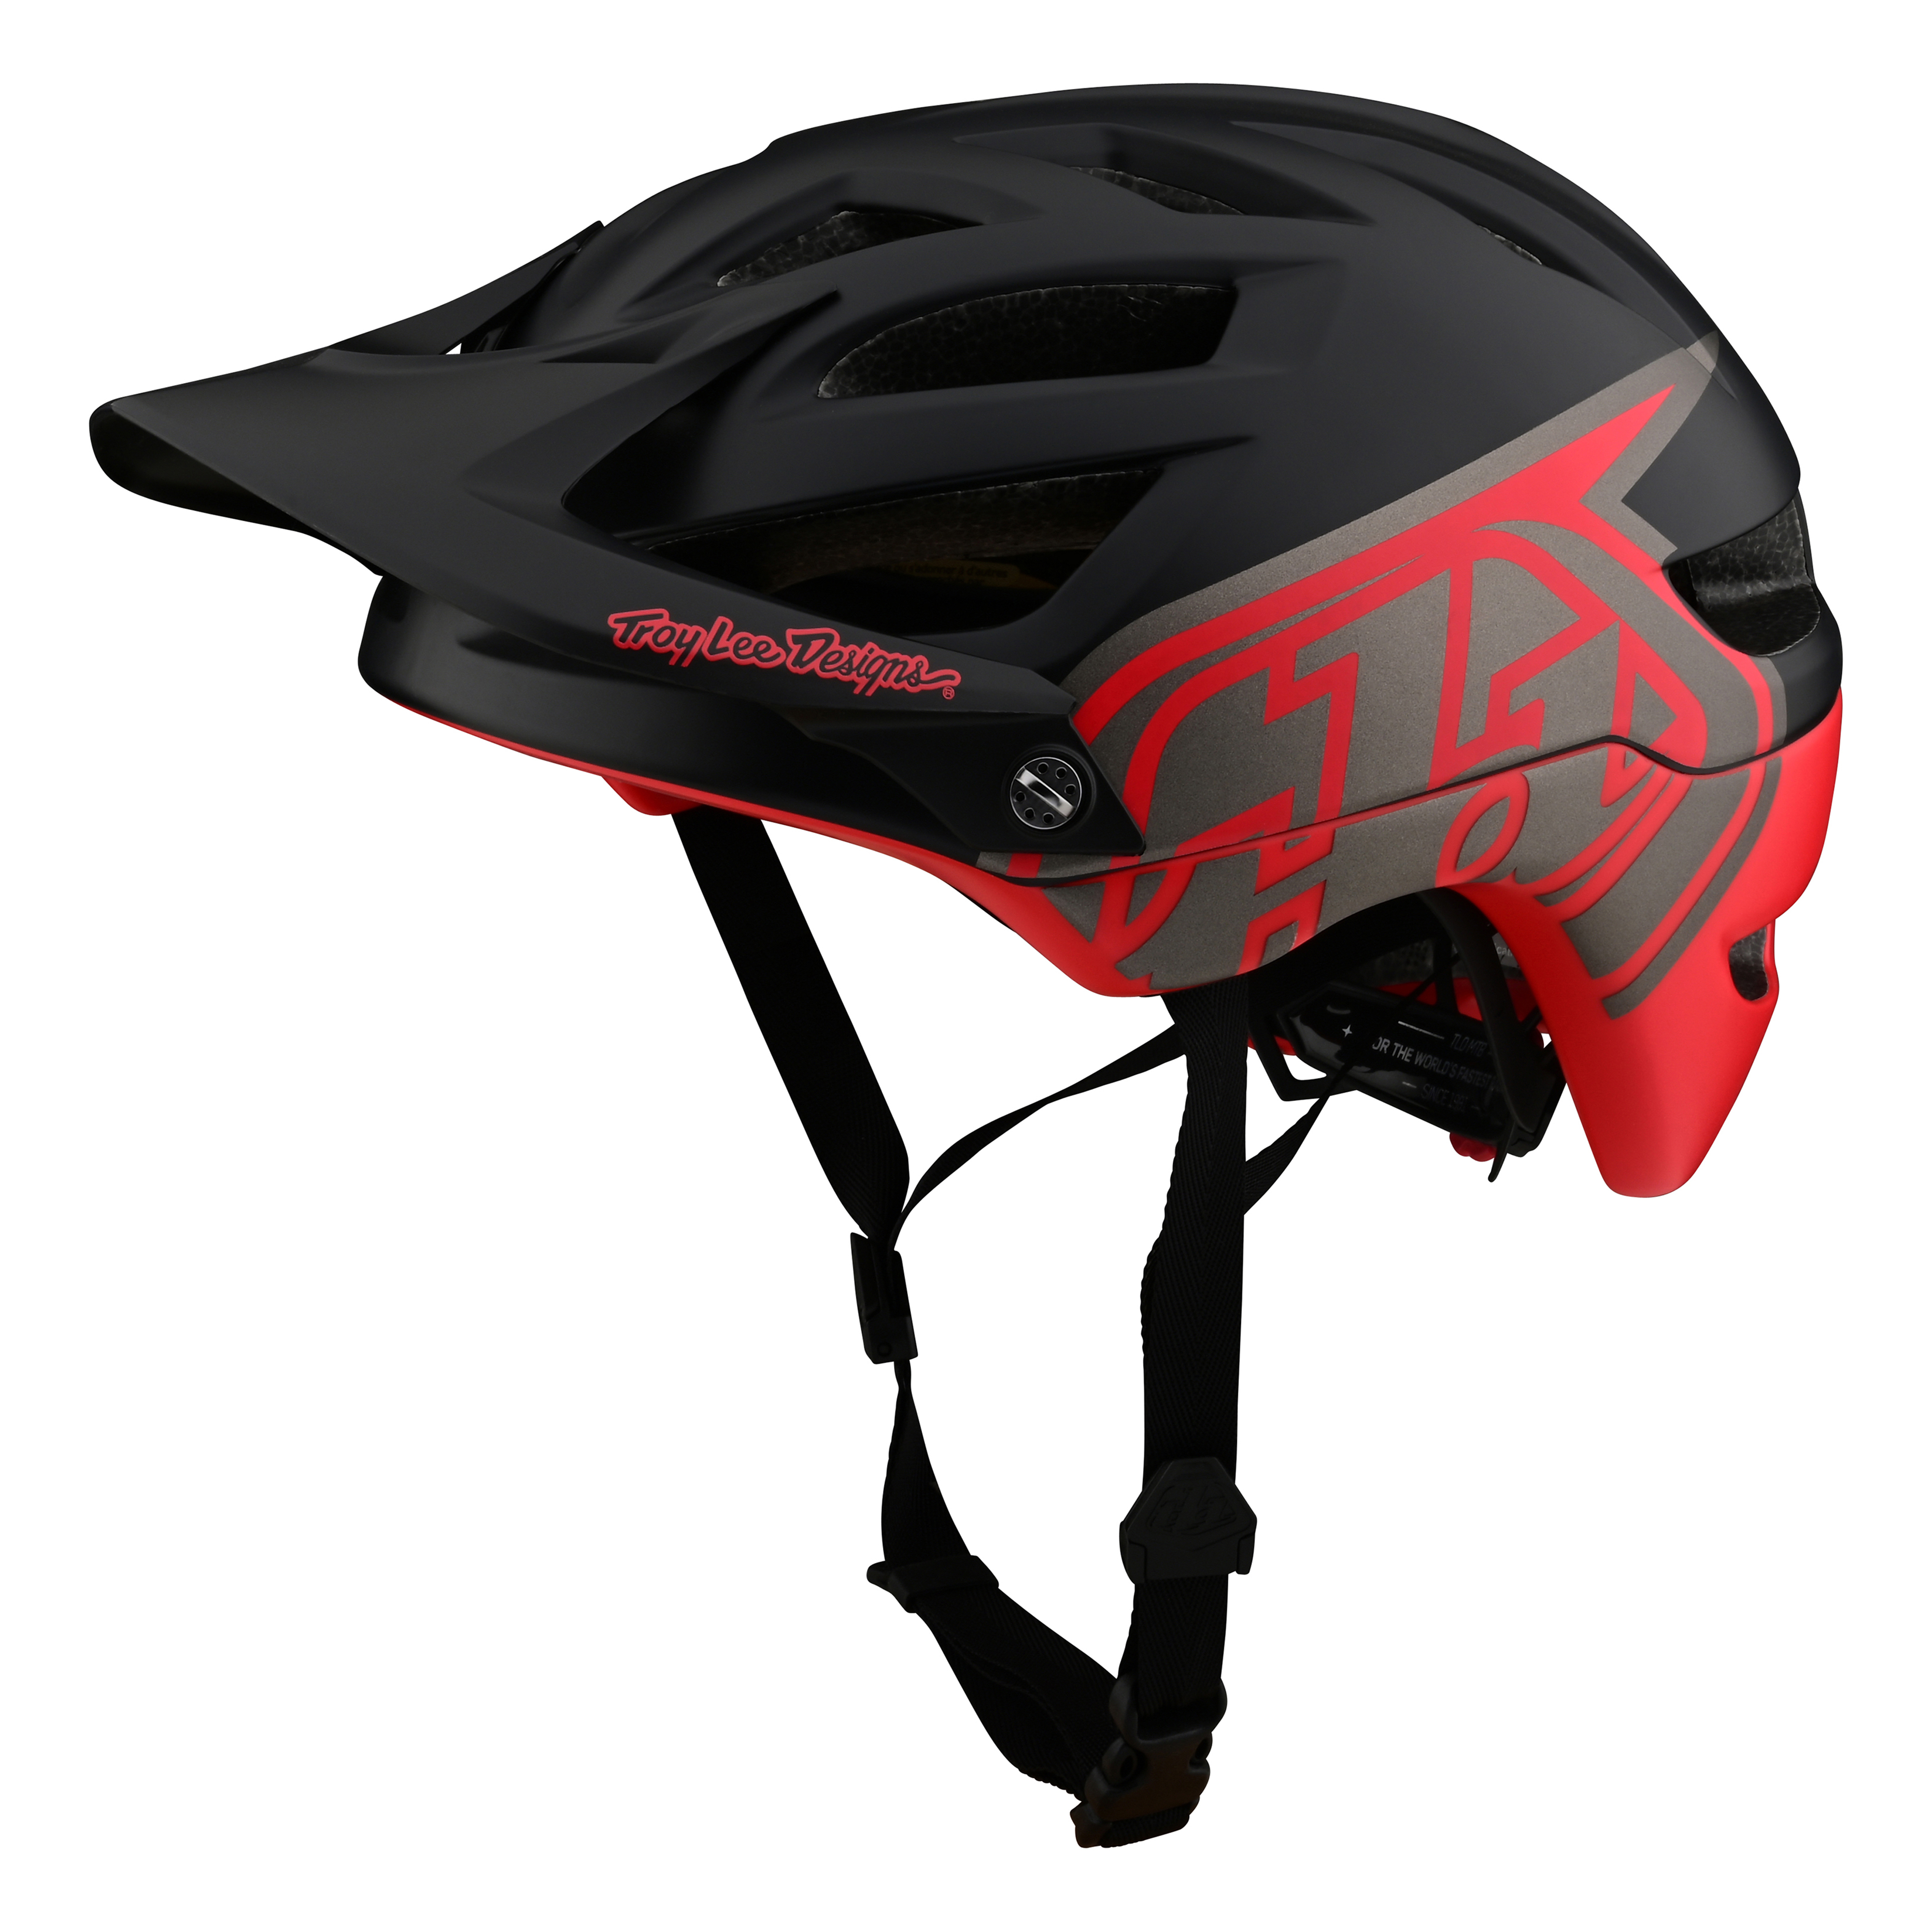 트로이리 디자인 A1 MIPS 헬멧 (클래식 블랙/레드)